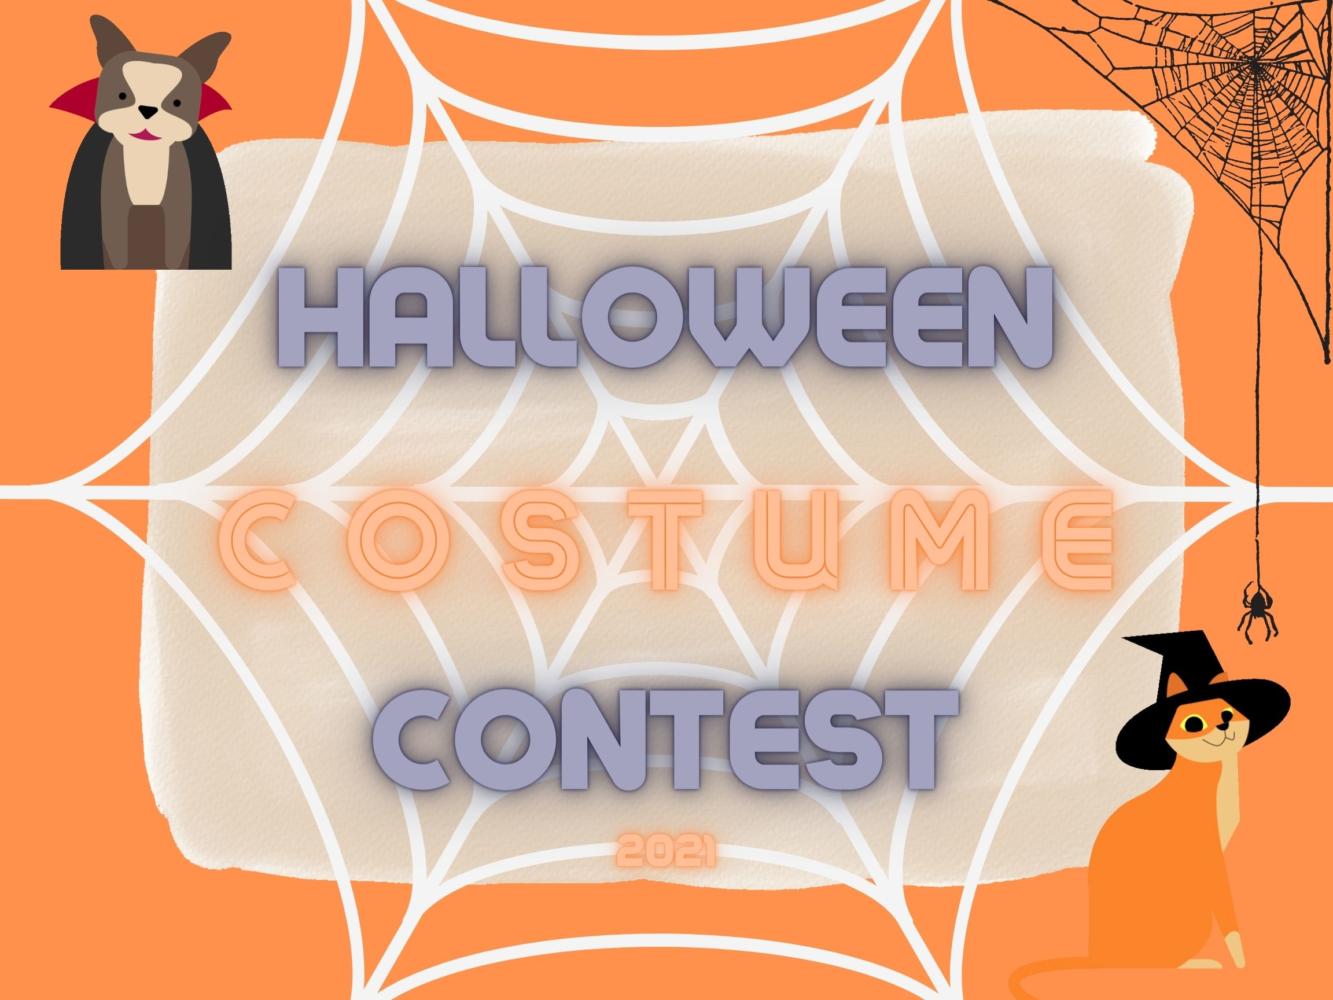 2021 Halloween Costume Contest